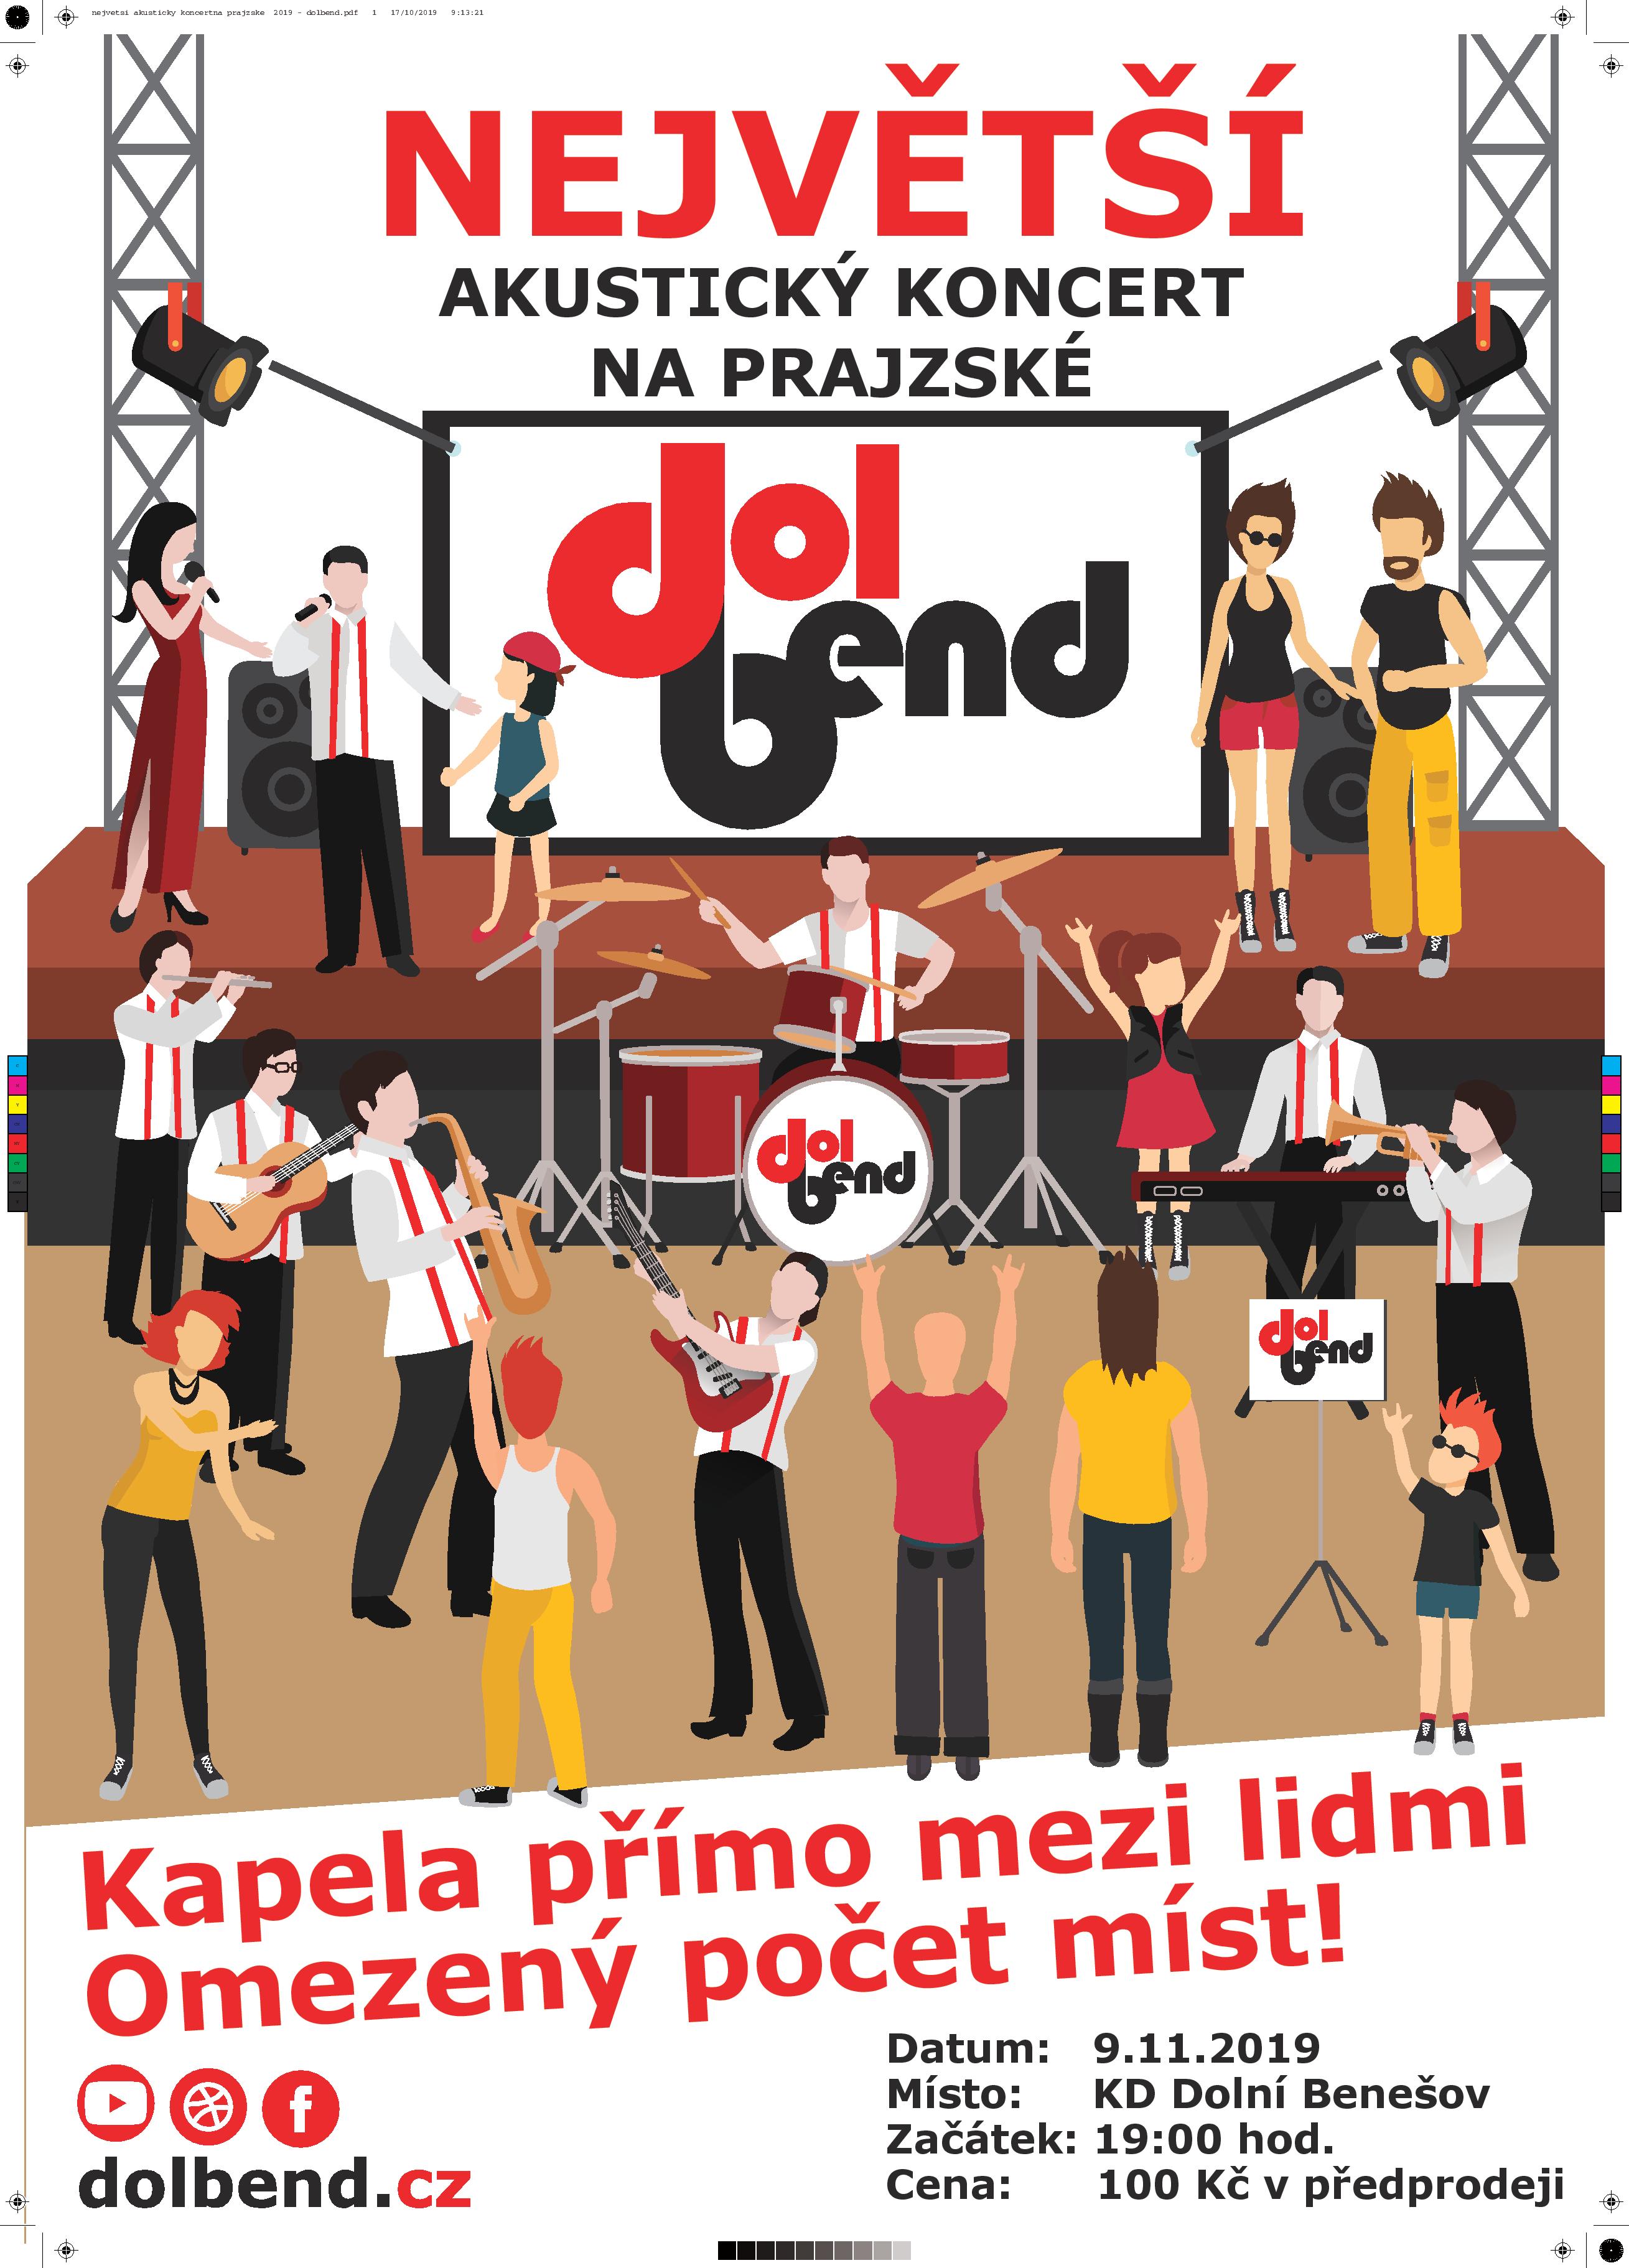 DOLBEND - největší akustický koncert na Prajzské